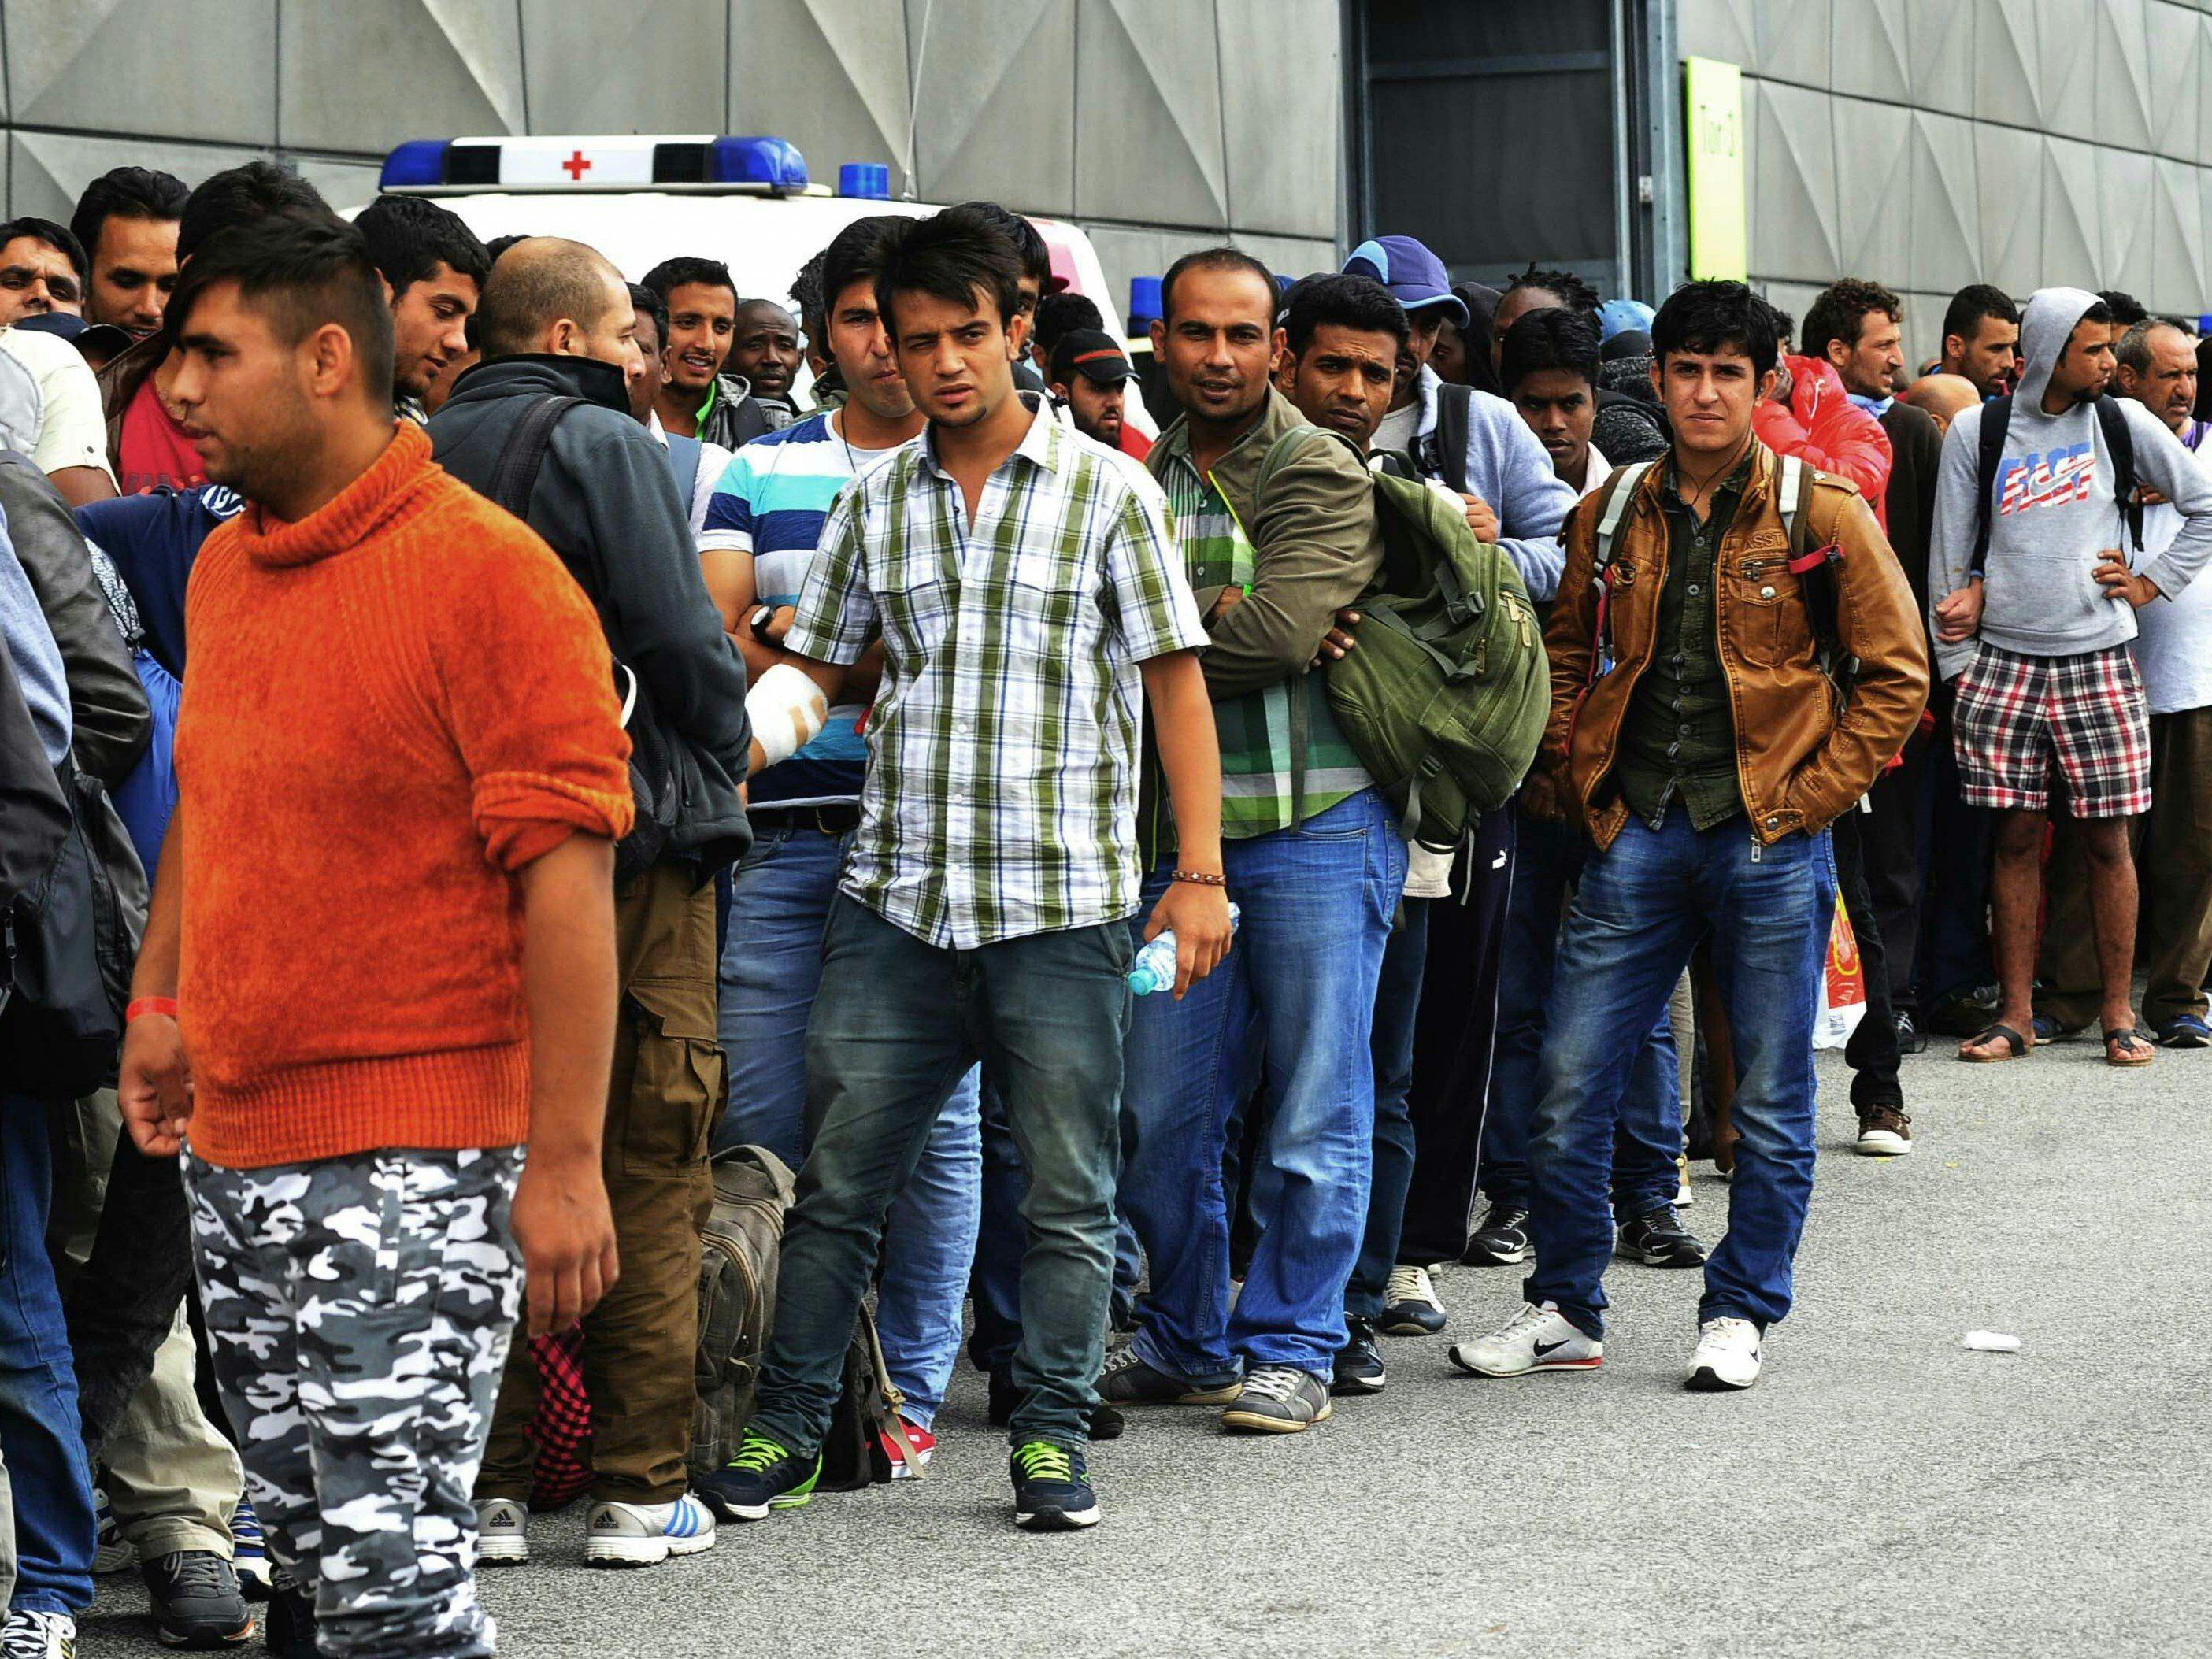 Soll die EU eine Flüchtlingsquote beschließen?